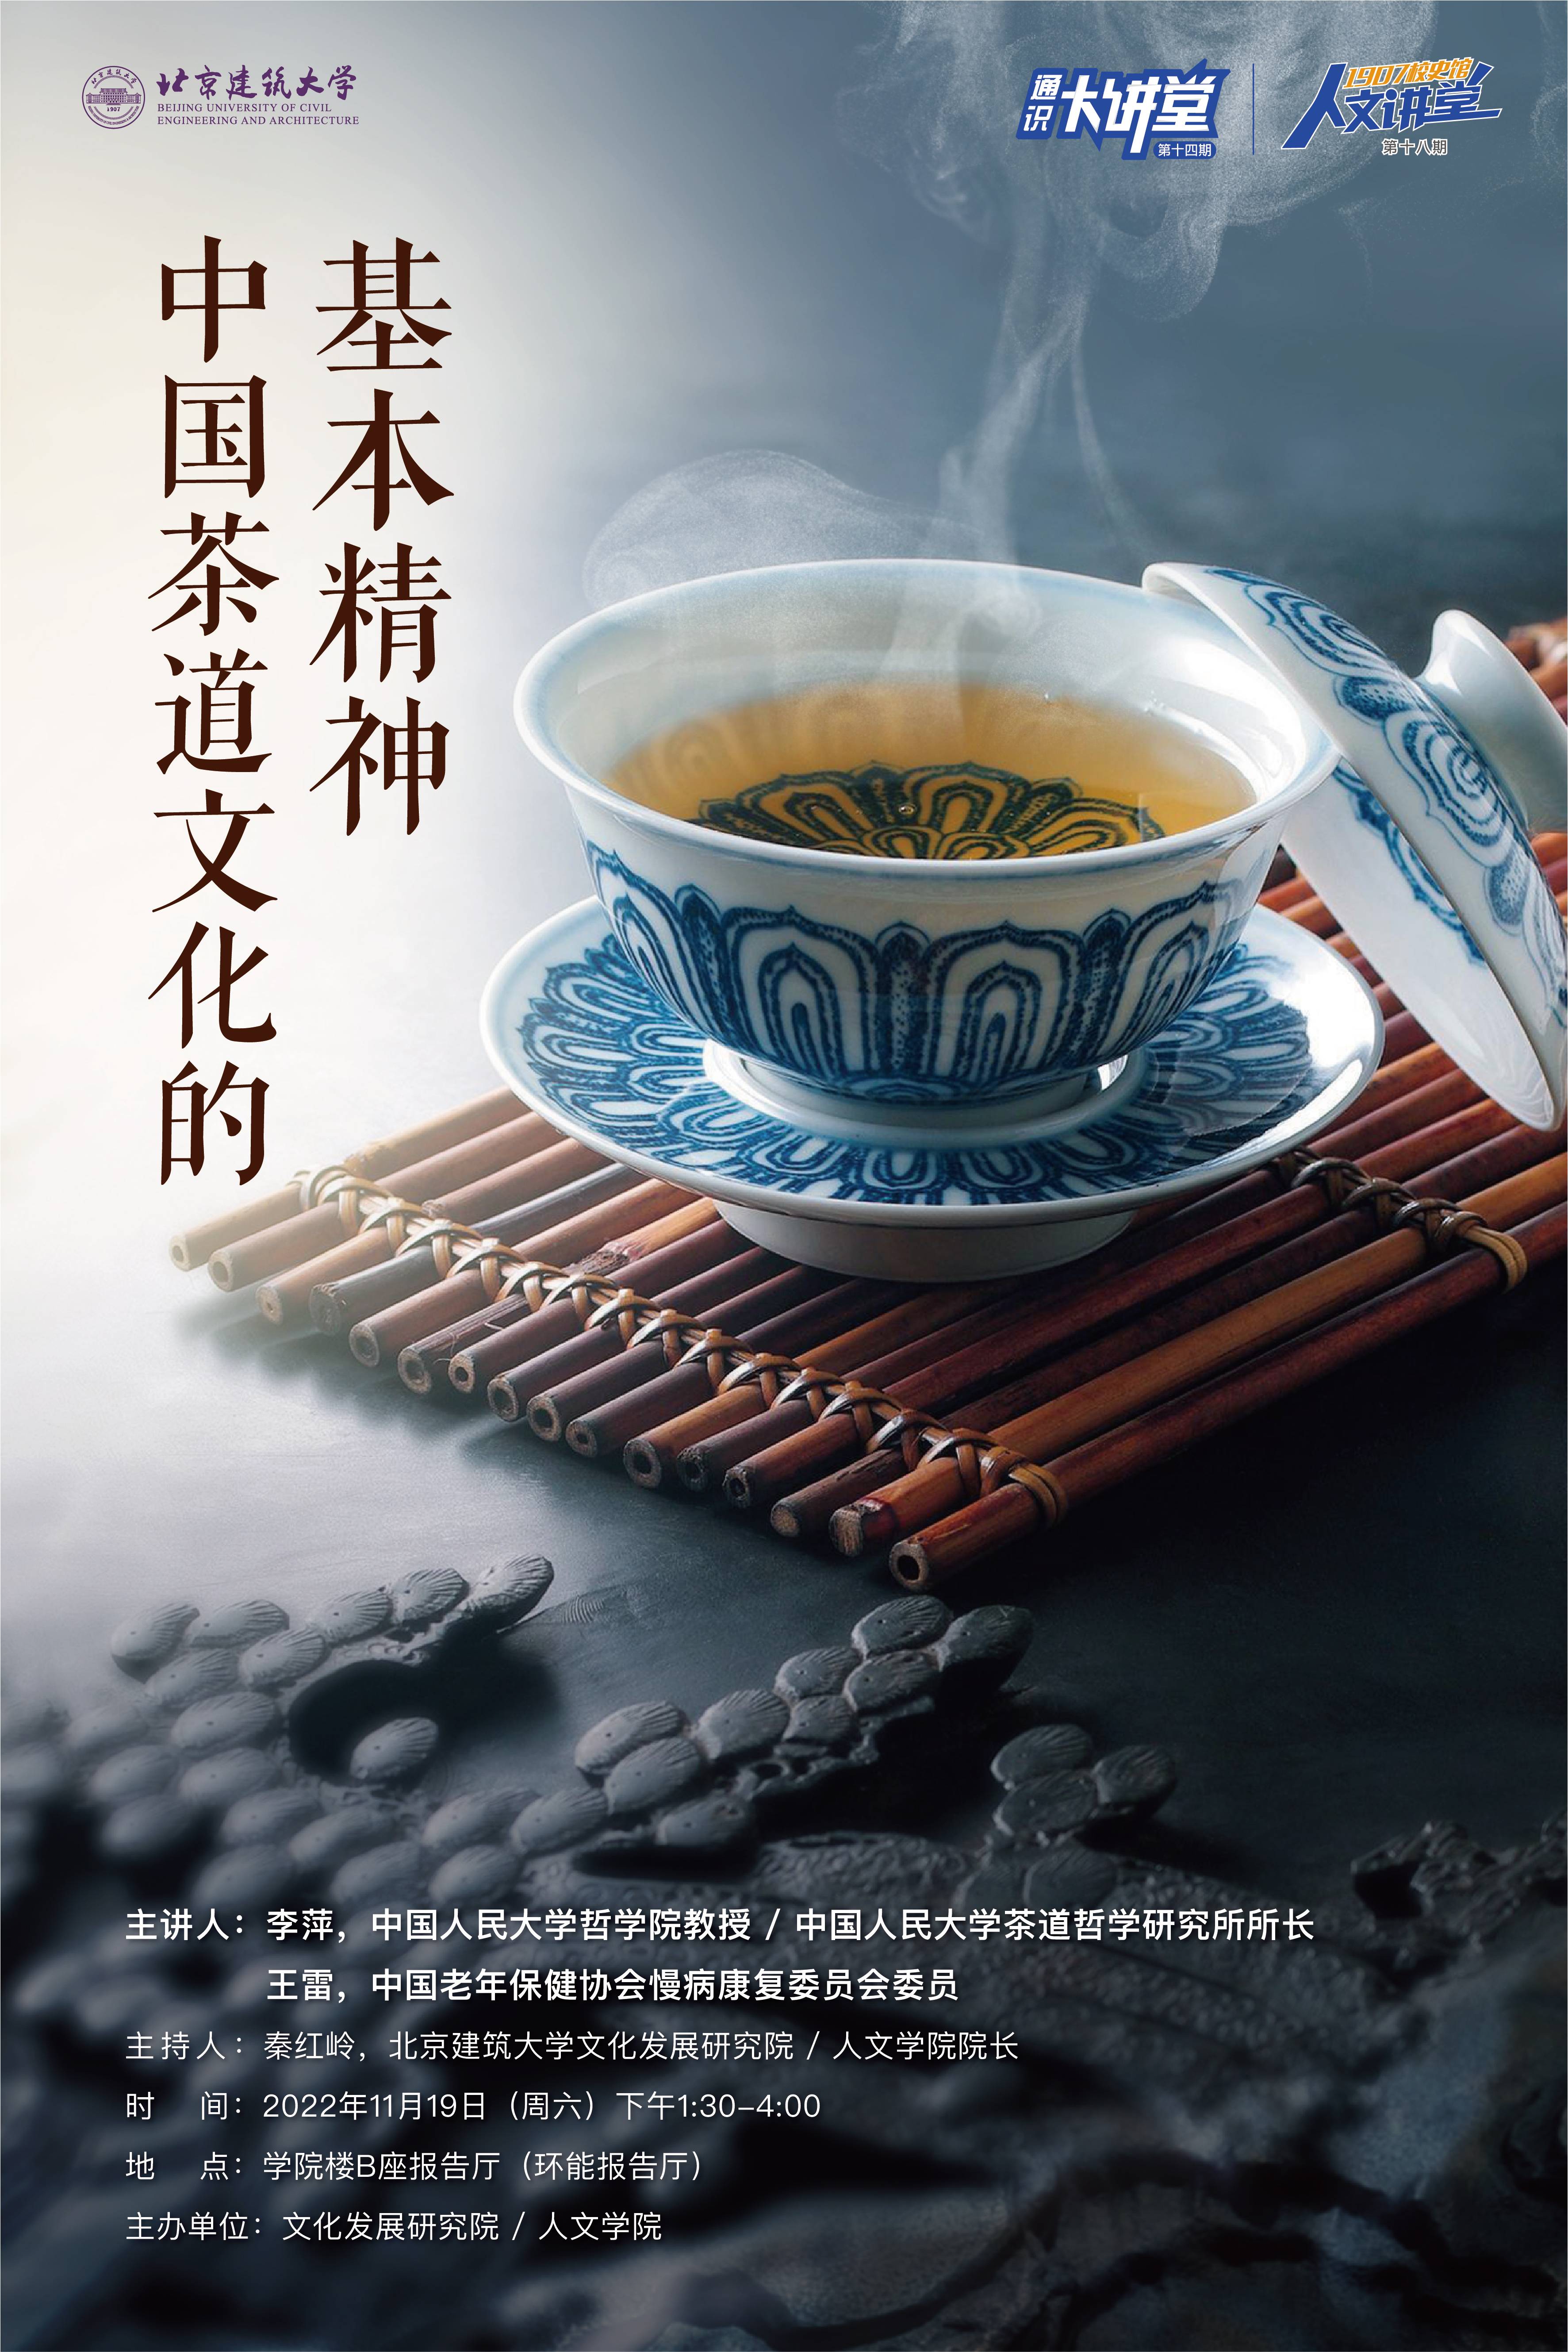 人文讲堂第十八期暨通识大讲堂第十四期 ——中国茶道文化的基本精神